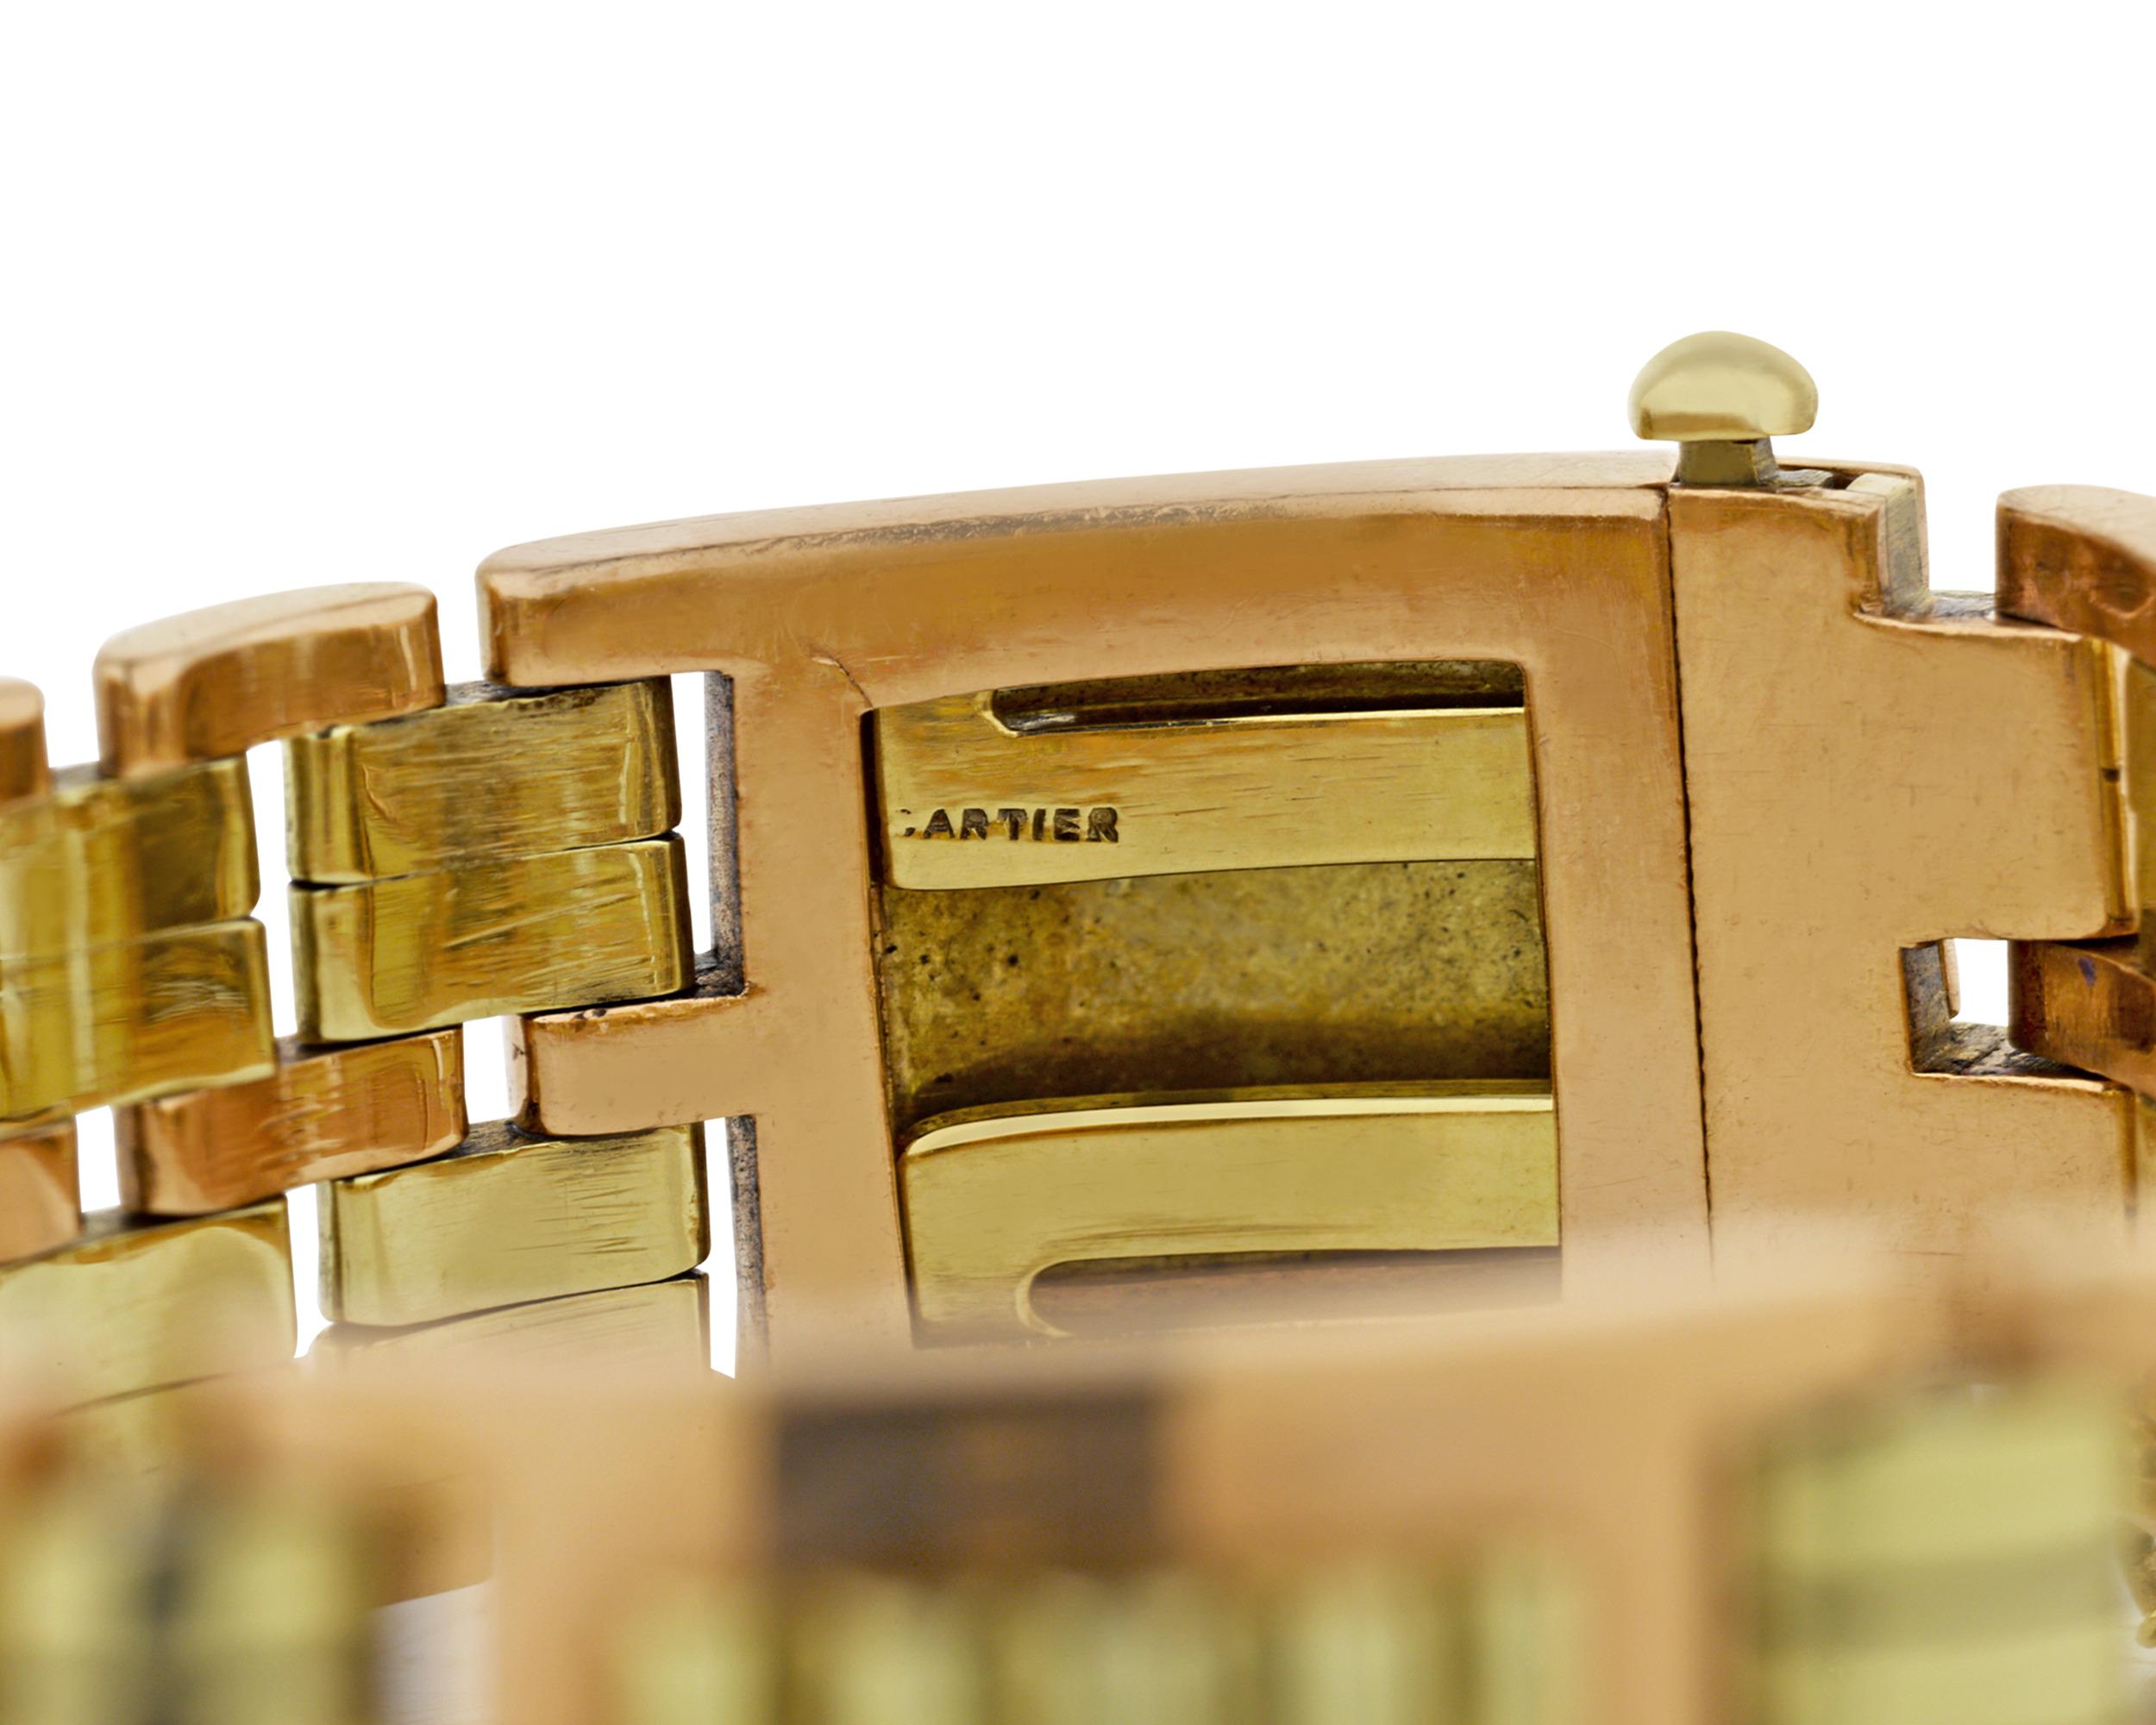 Ce fabuleux bracelet en or 14 carats de Cartier est un exemple classique du goût impeccable de la firme. Le modèle à maillons en or bicolore est une merveille d'art et d'artisanat rétro, illustrant les qualités qui font de Cartier l'un des noms les